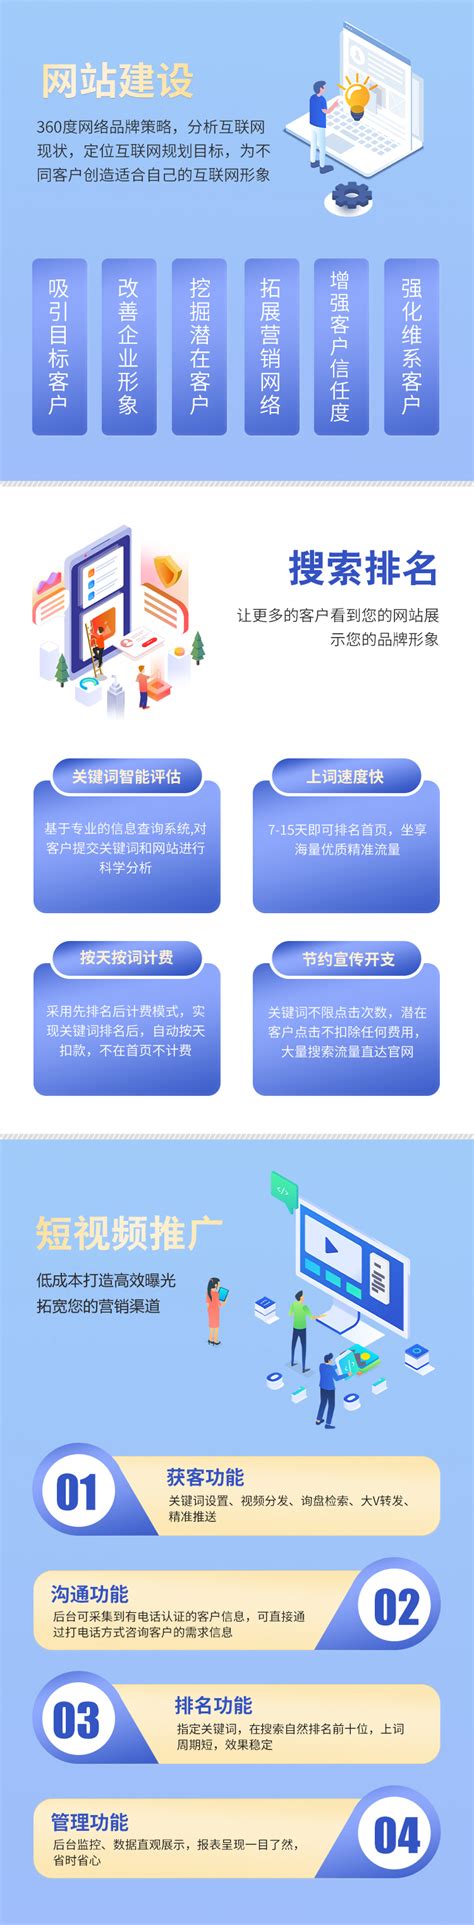 浙江网站建设方案公司电话